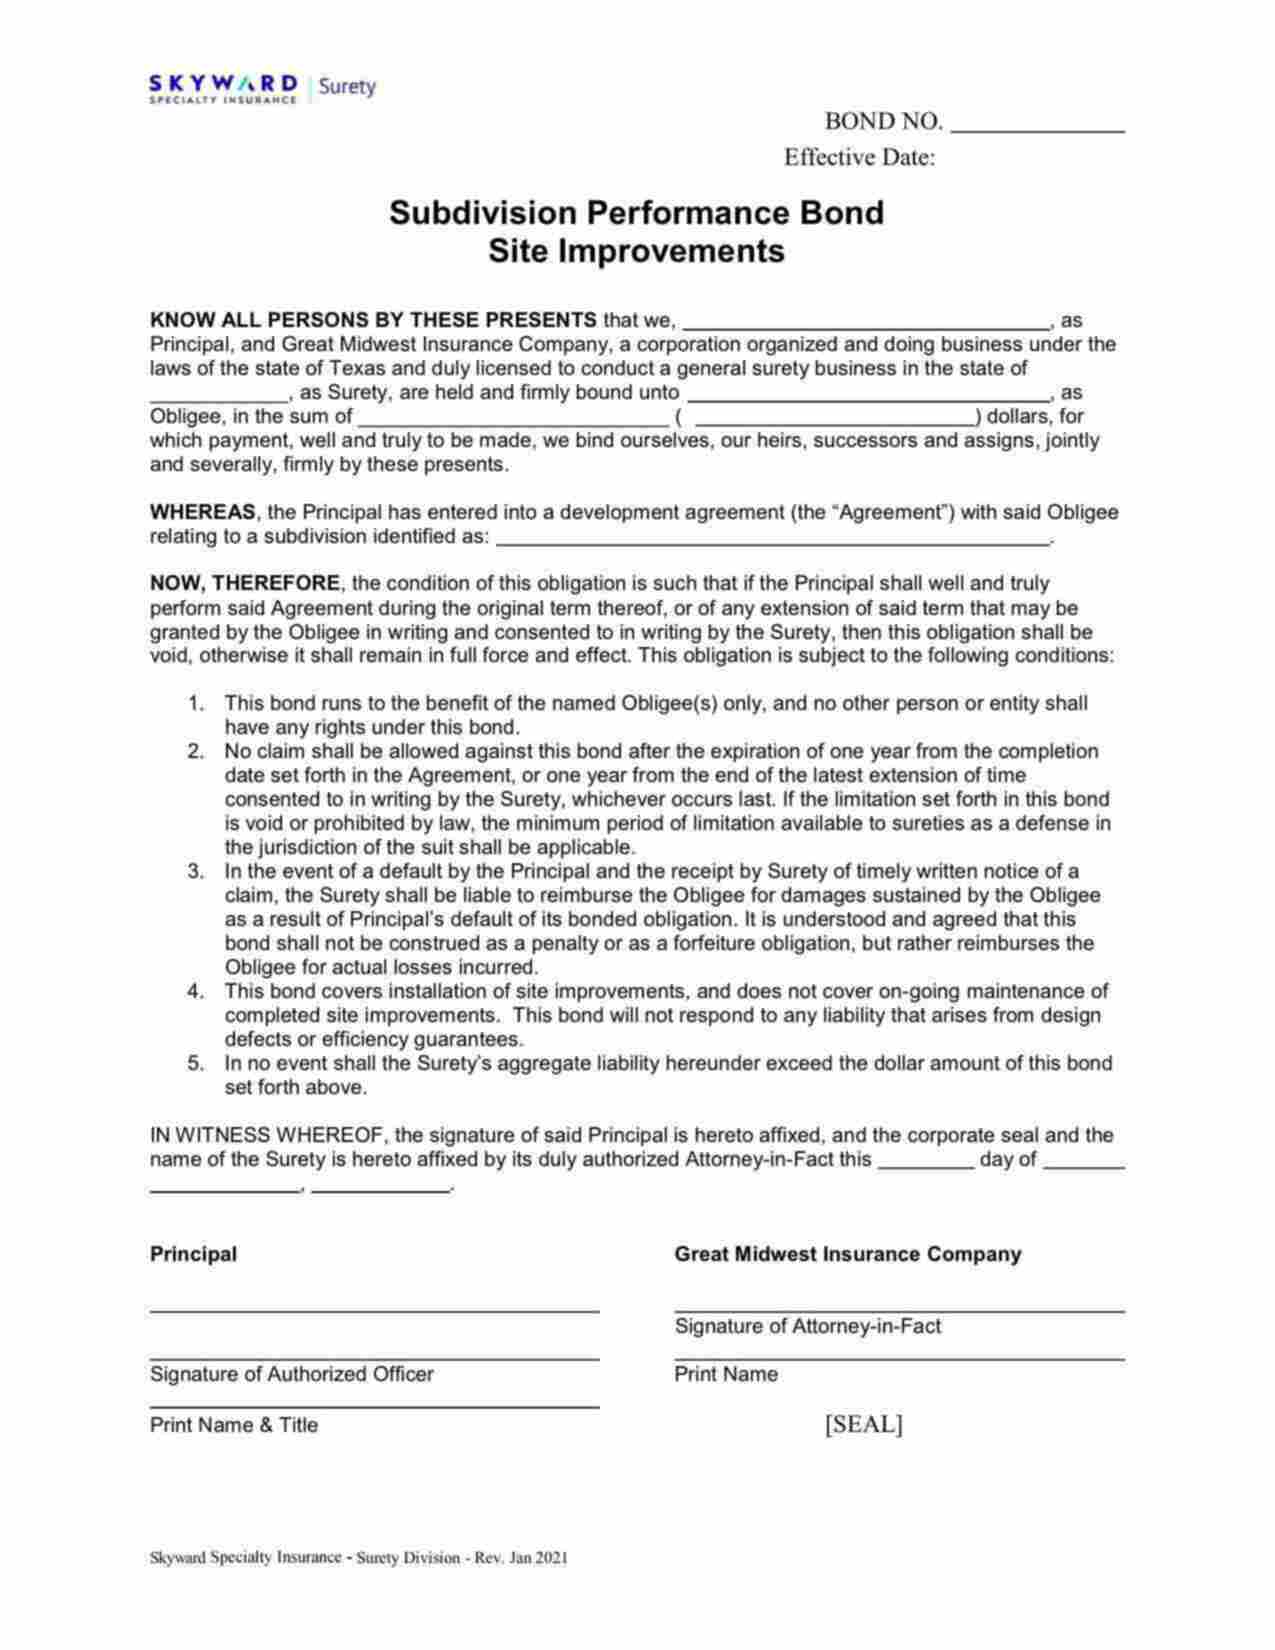 Connecticut Subdivision, Site Improvement or Development Bond Form